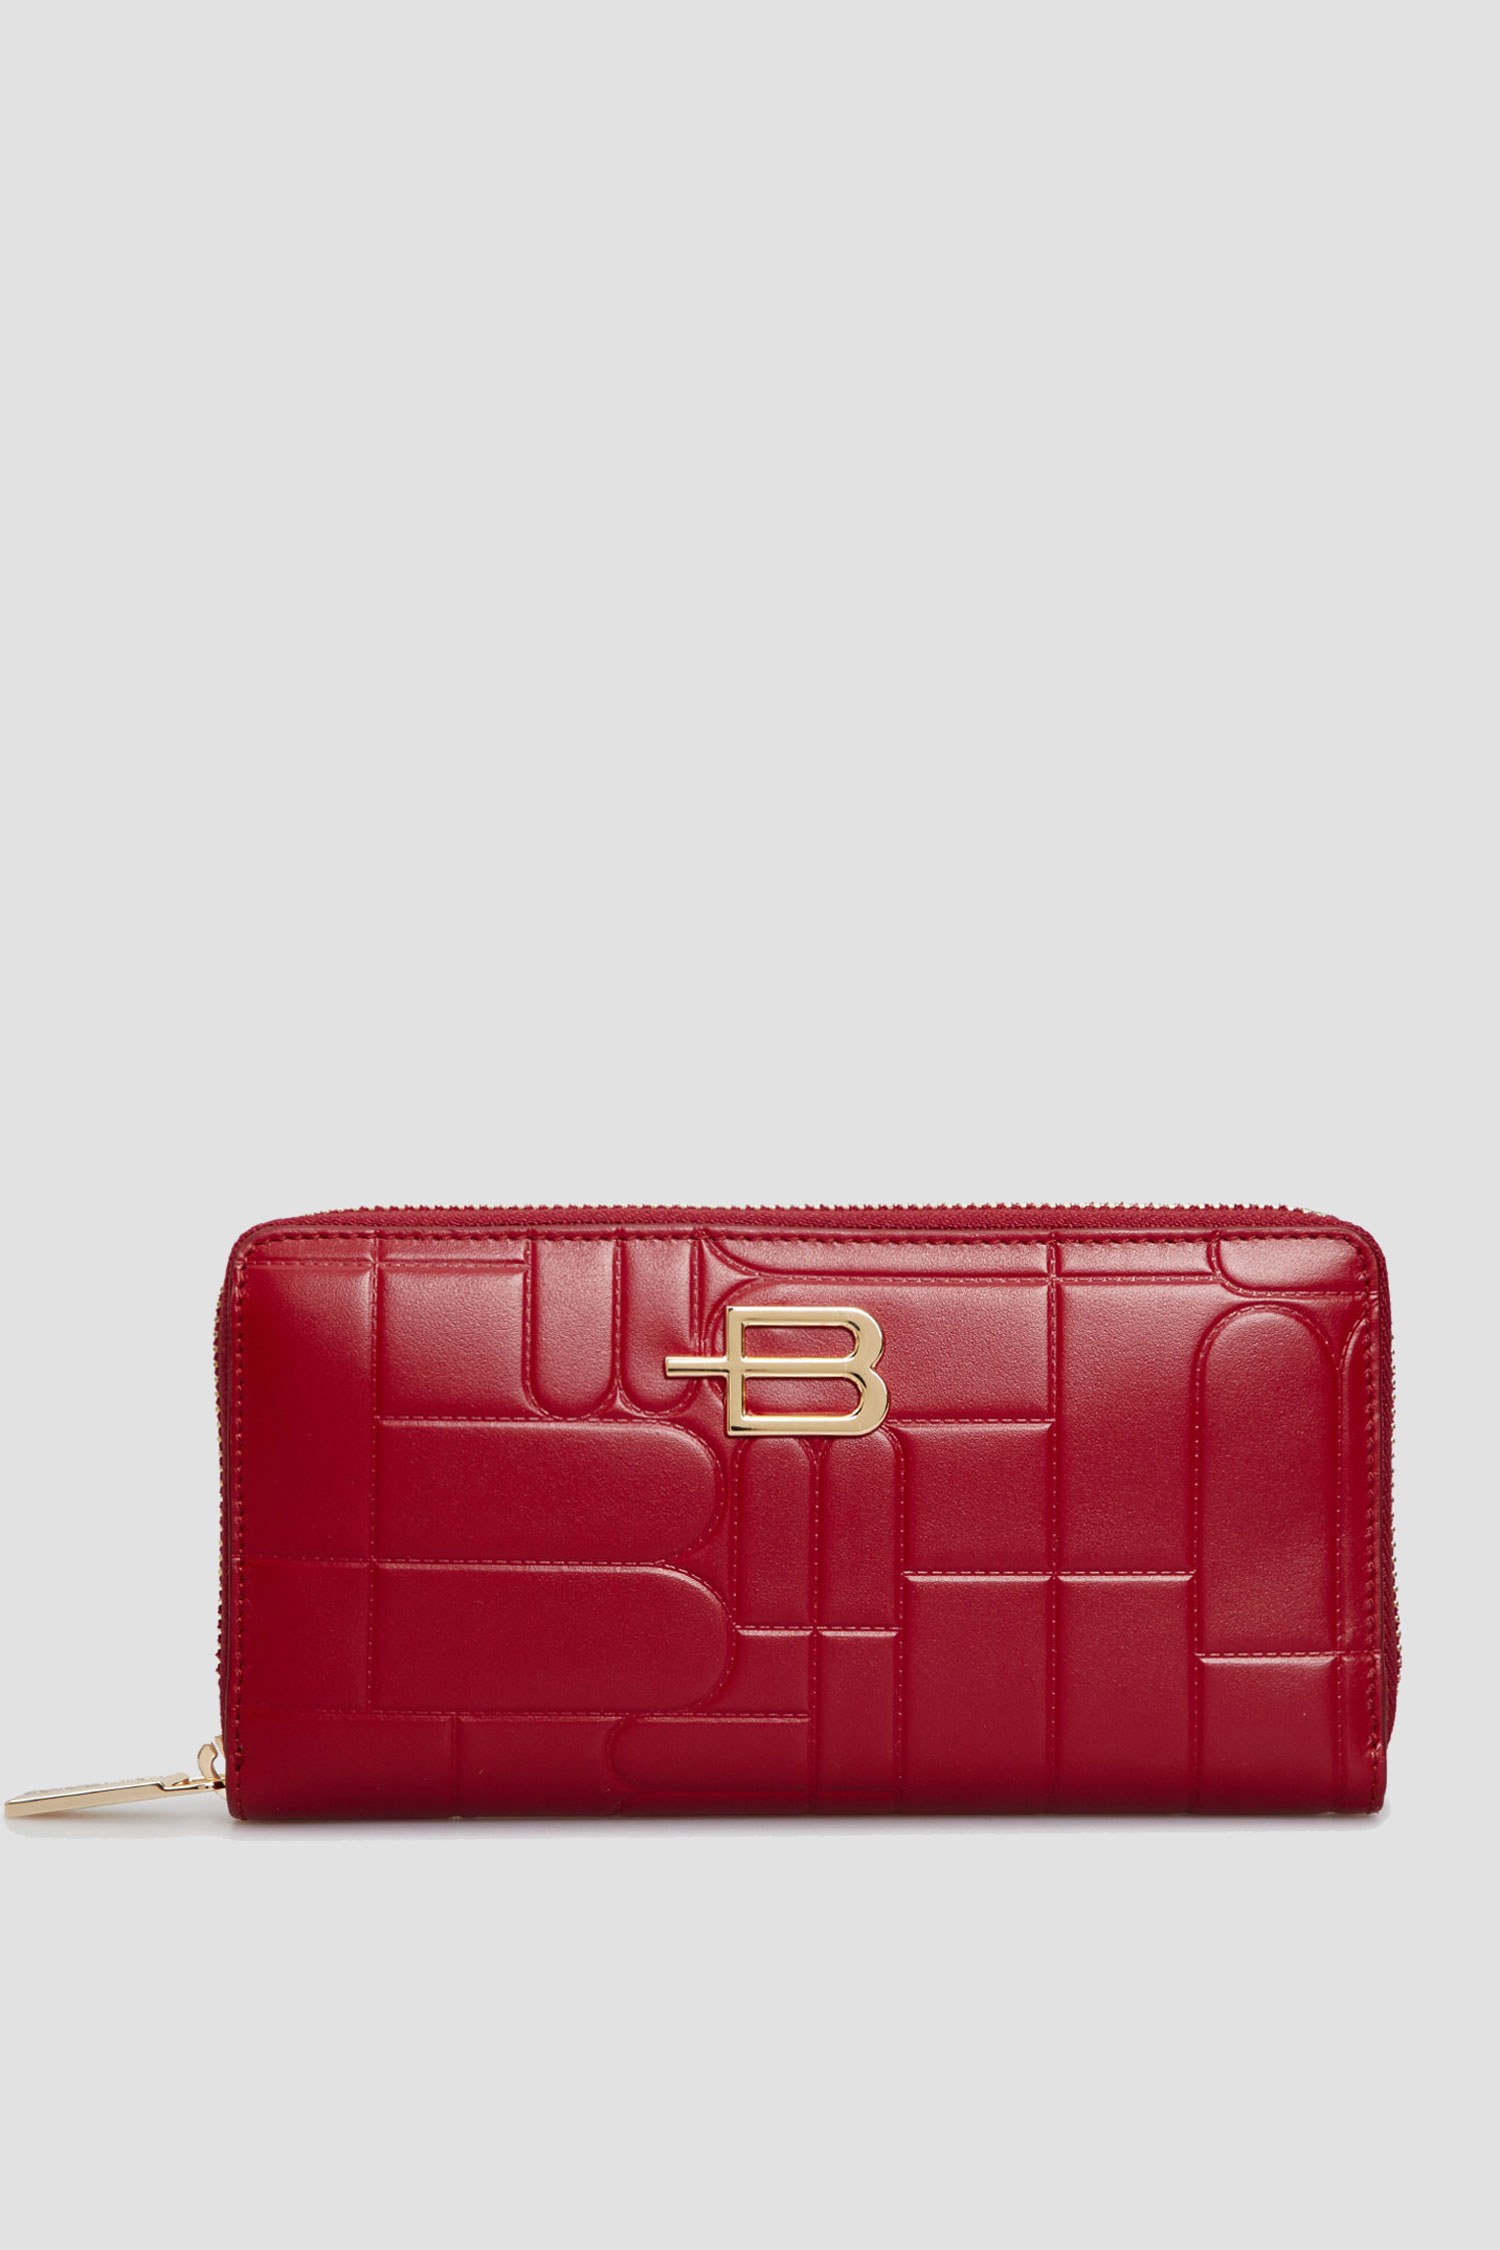 Жіночий червоний шкіряний гаманець з візерунком Baldinini P3B003XXMONO;7006